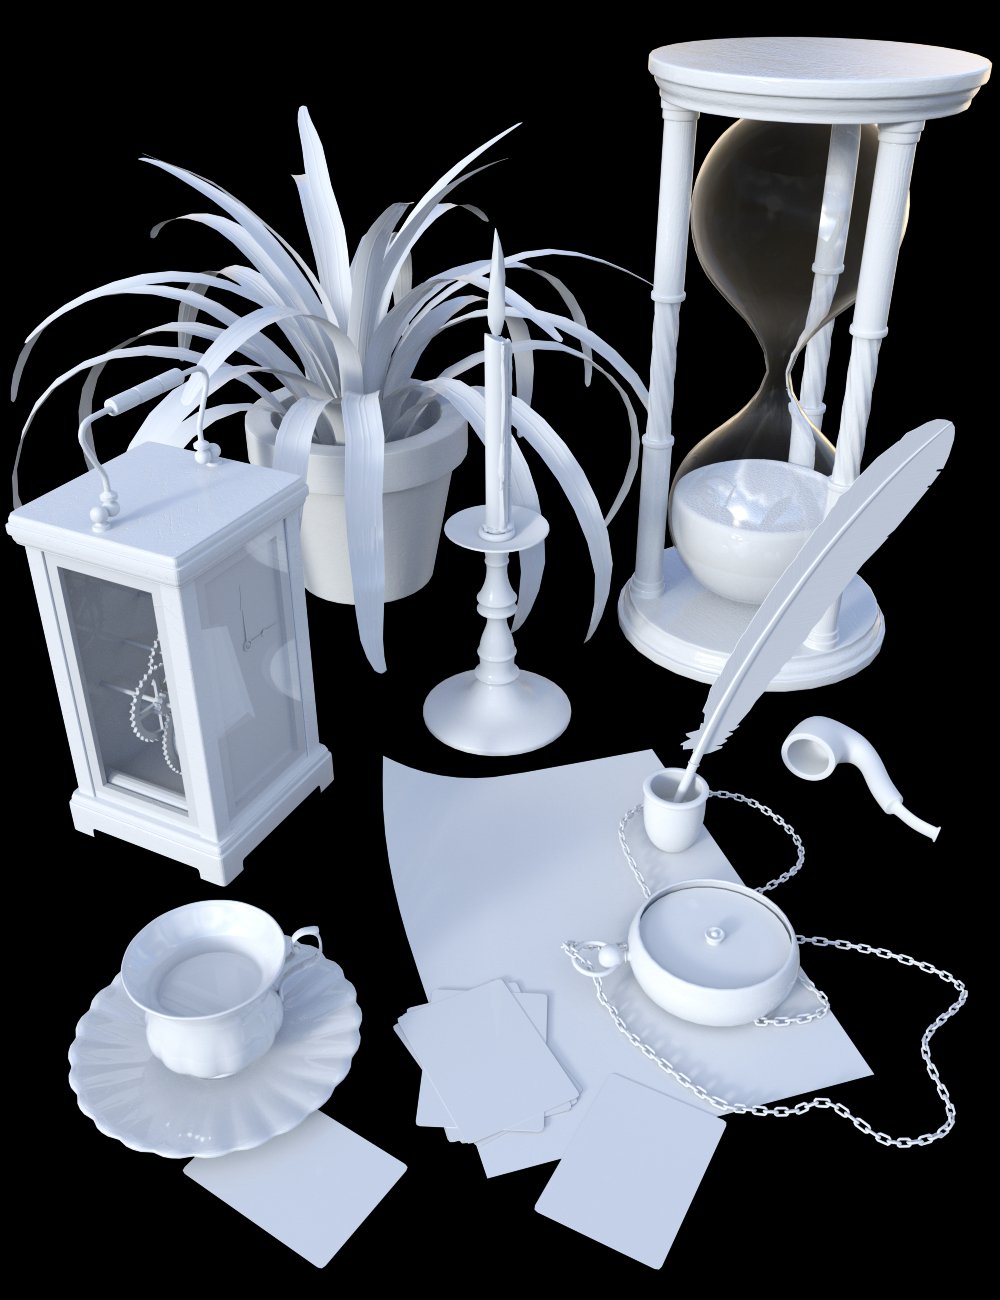 Victorian Study Clutter by: Merlin Studios, 3D Models by Daz 3D